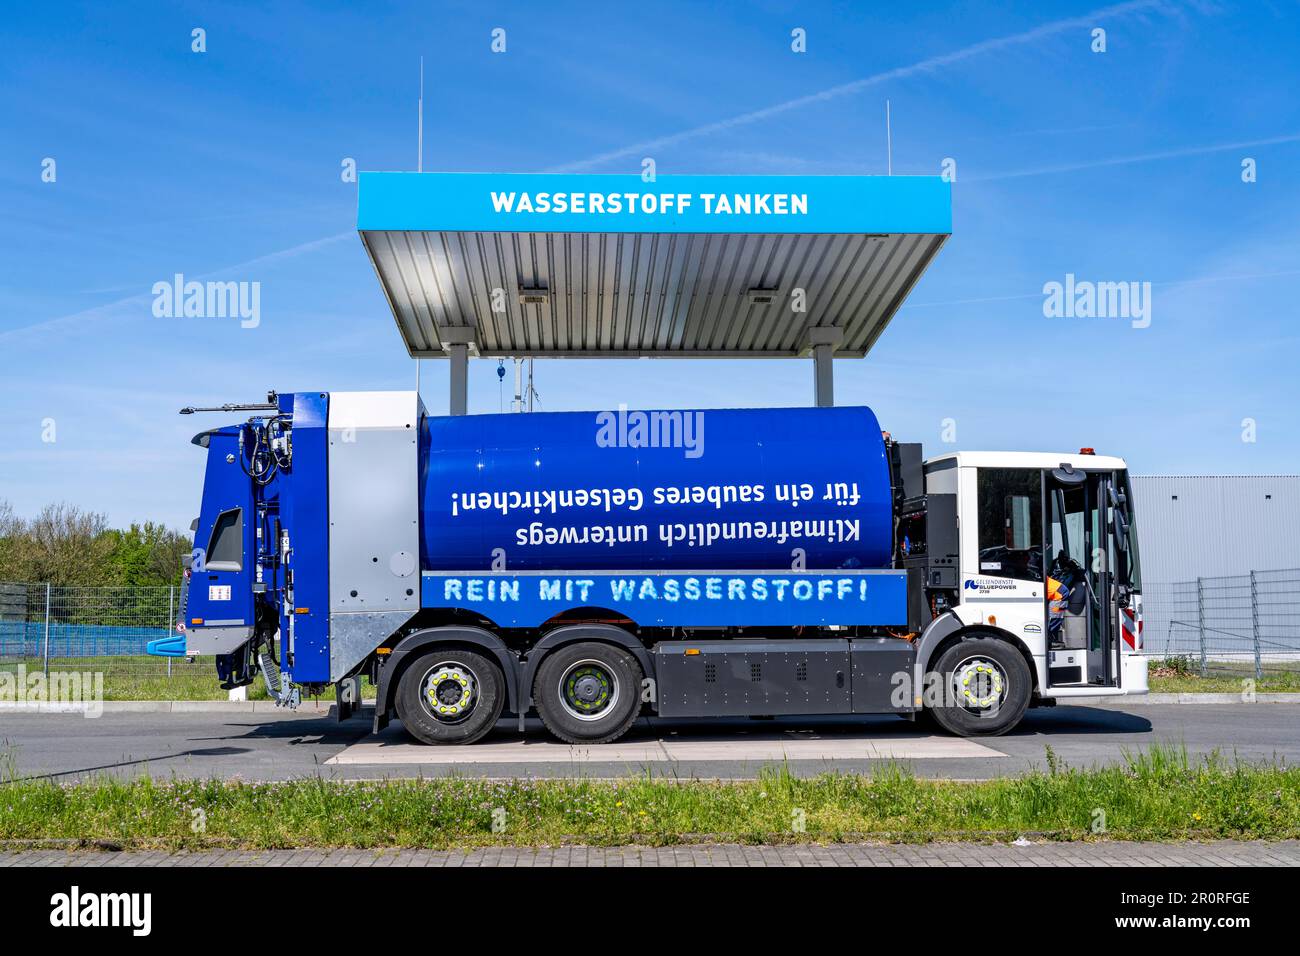 Stazione di rifornimento idrogeno, veicolo per lo smaltimento dei rifiuti, veicolo per la raccolta dei rifiuti, di Gelsendienste di Gelsenkirchen, rifornimento in corrispondenza del centro di idrogeno Foto Stock